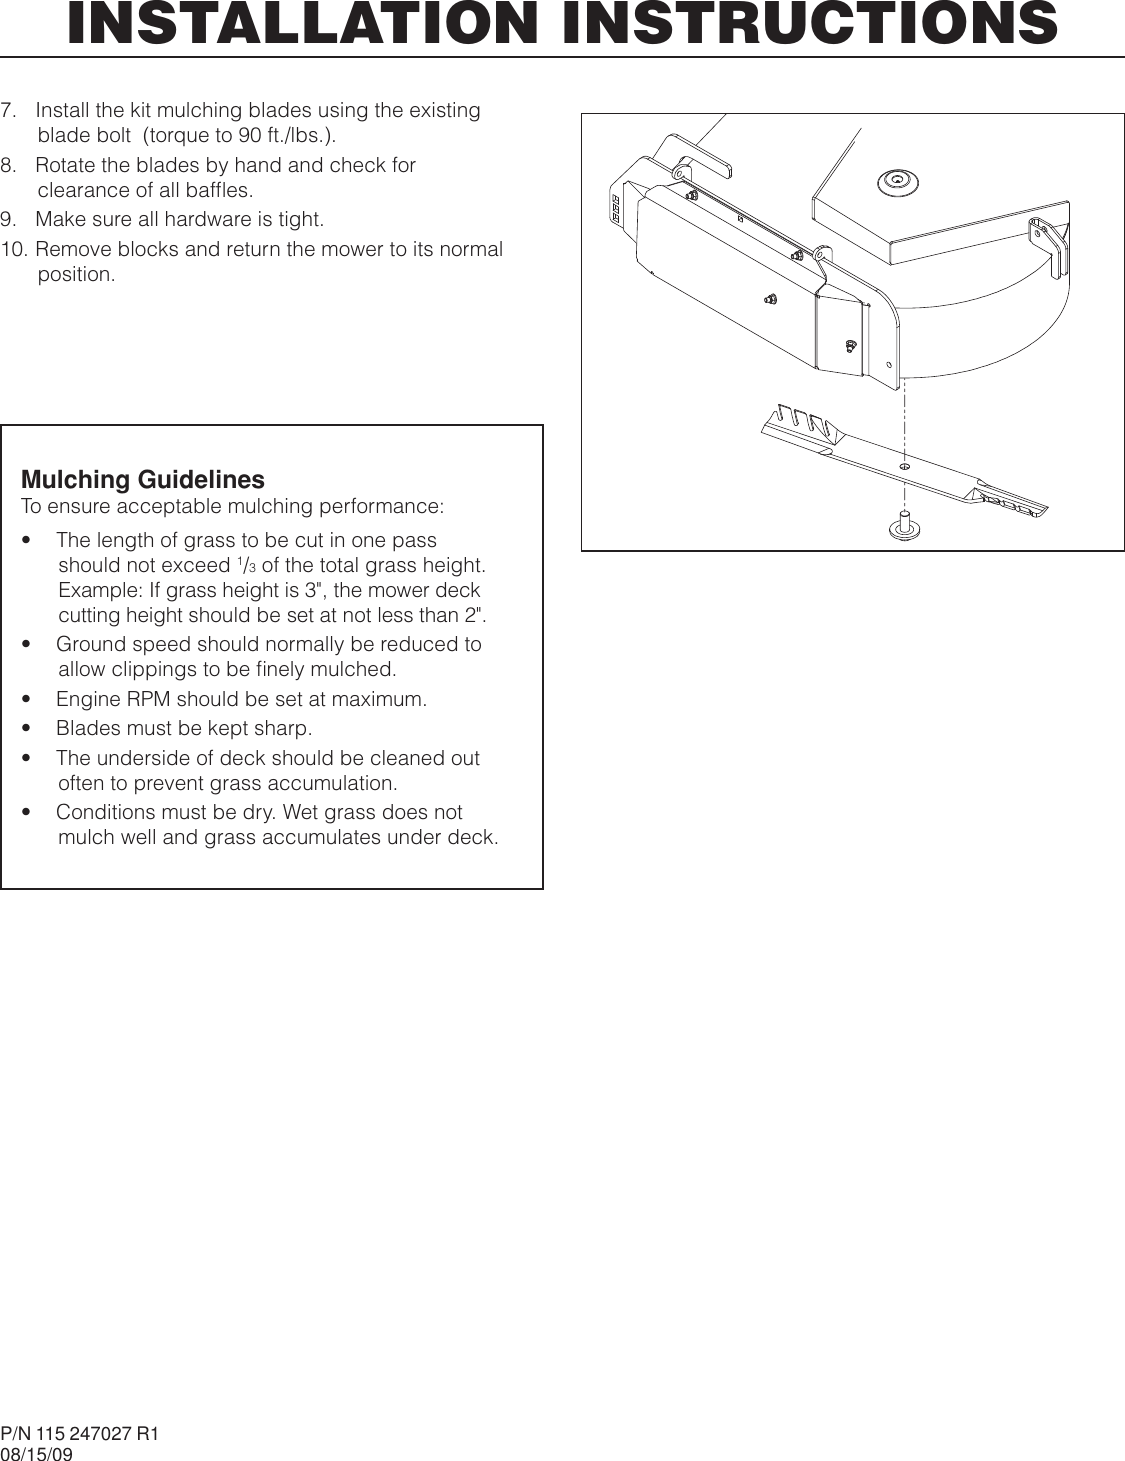 Page 3 of 3 - Husqvarna Husqvarna-Mulch-Kit-60-Pz29-966444701-2011-03-Owner-S-Manual OM, Mulch Kit 60, PZ29, 966444701, 2011-03